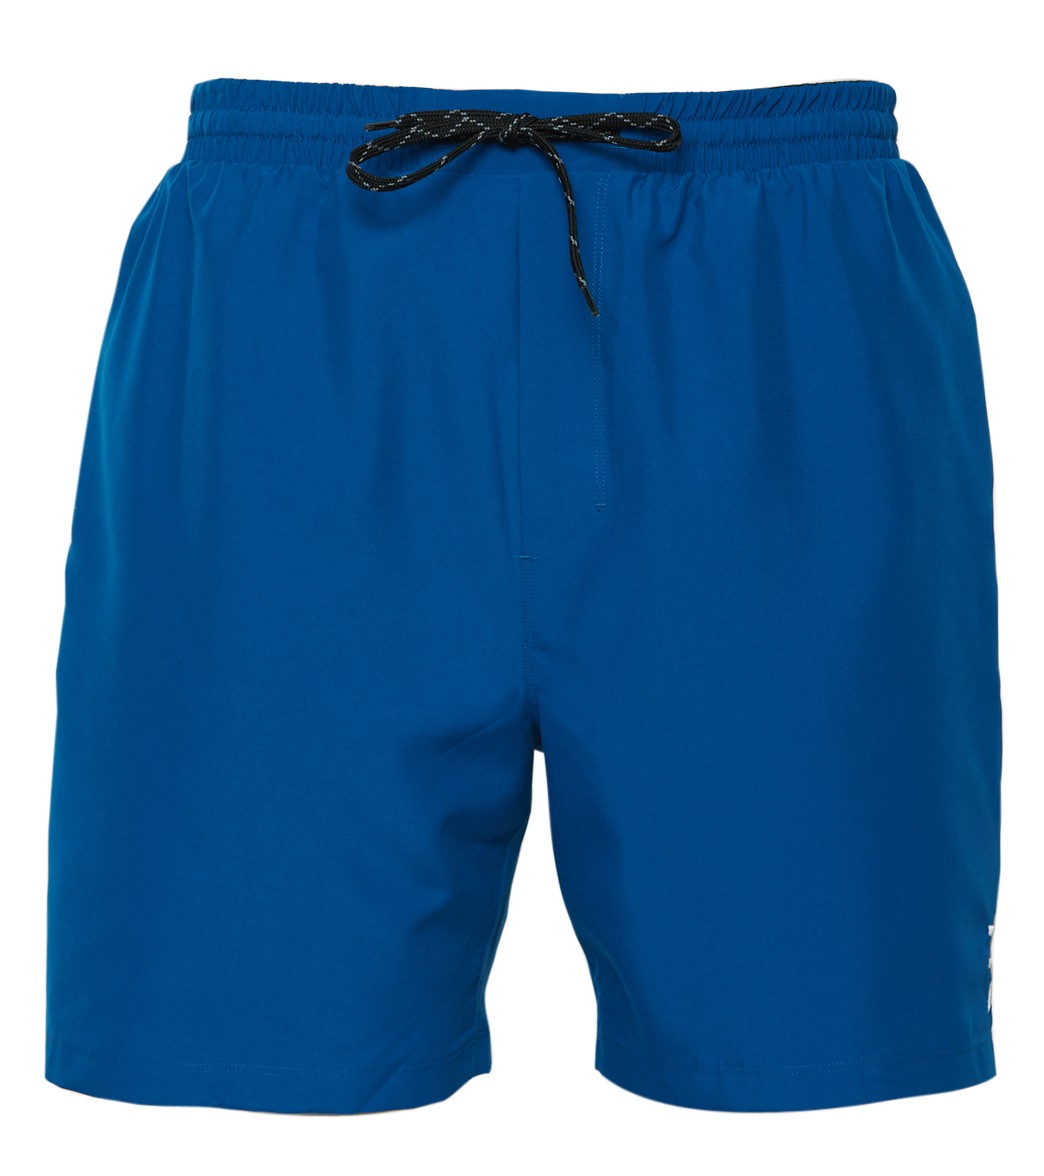 TYR Men's Solid Atlantic Swim Short - Turquoise Xl Size Xl - Swimoutlet.com